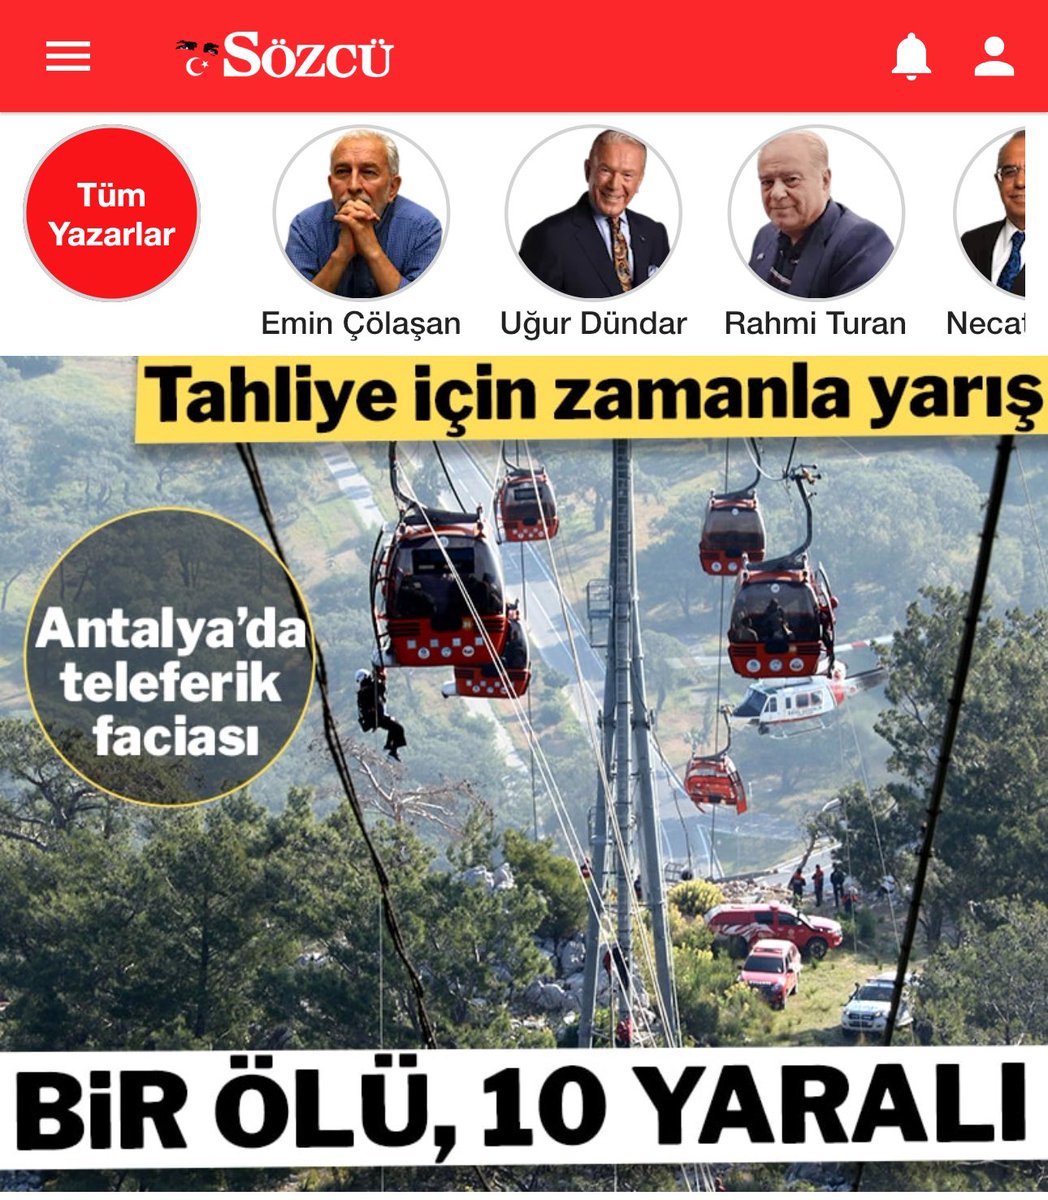 Antalya Belediyesini Muhittin Böcek değilde AK Partili Hakan Tütüncü kazanmış olsaydı, Konyaaltı’nda ki teleferik kazasını “AKP’li Başkan Belediye’yi 2 hafta yönetemedi” diye manşet atarlardı ama Belediye CHP’li olunca muhalif basının çıtı çıkmıyor… Yoksa mamaları kesilir tabi!